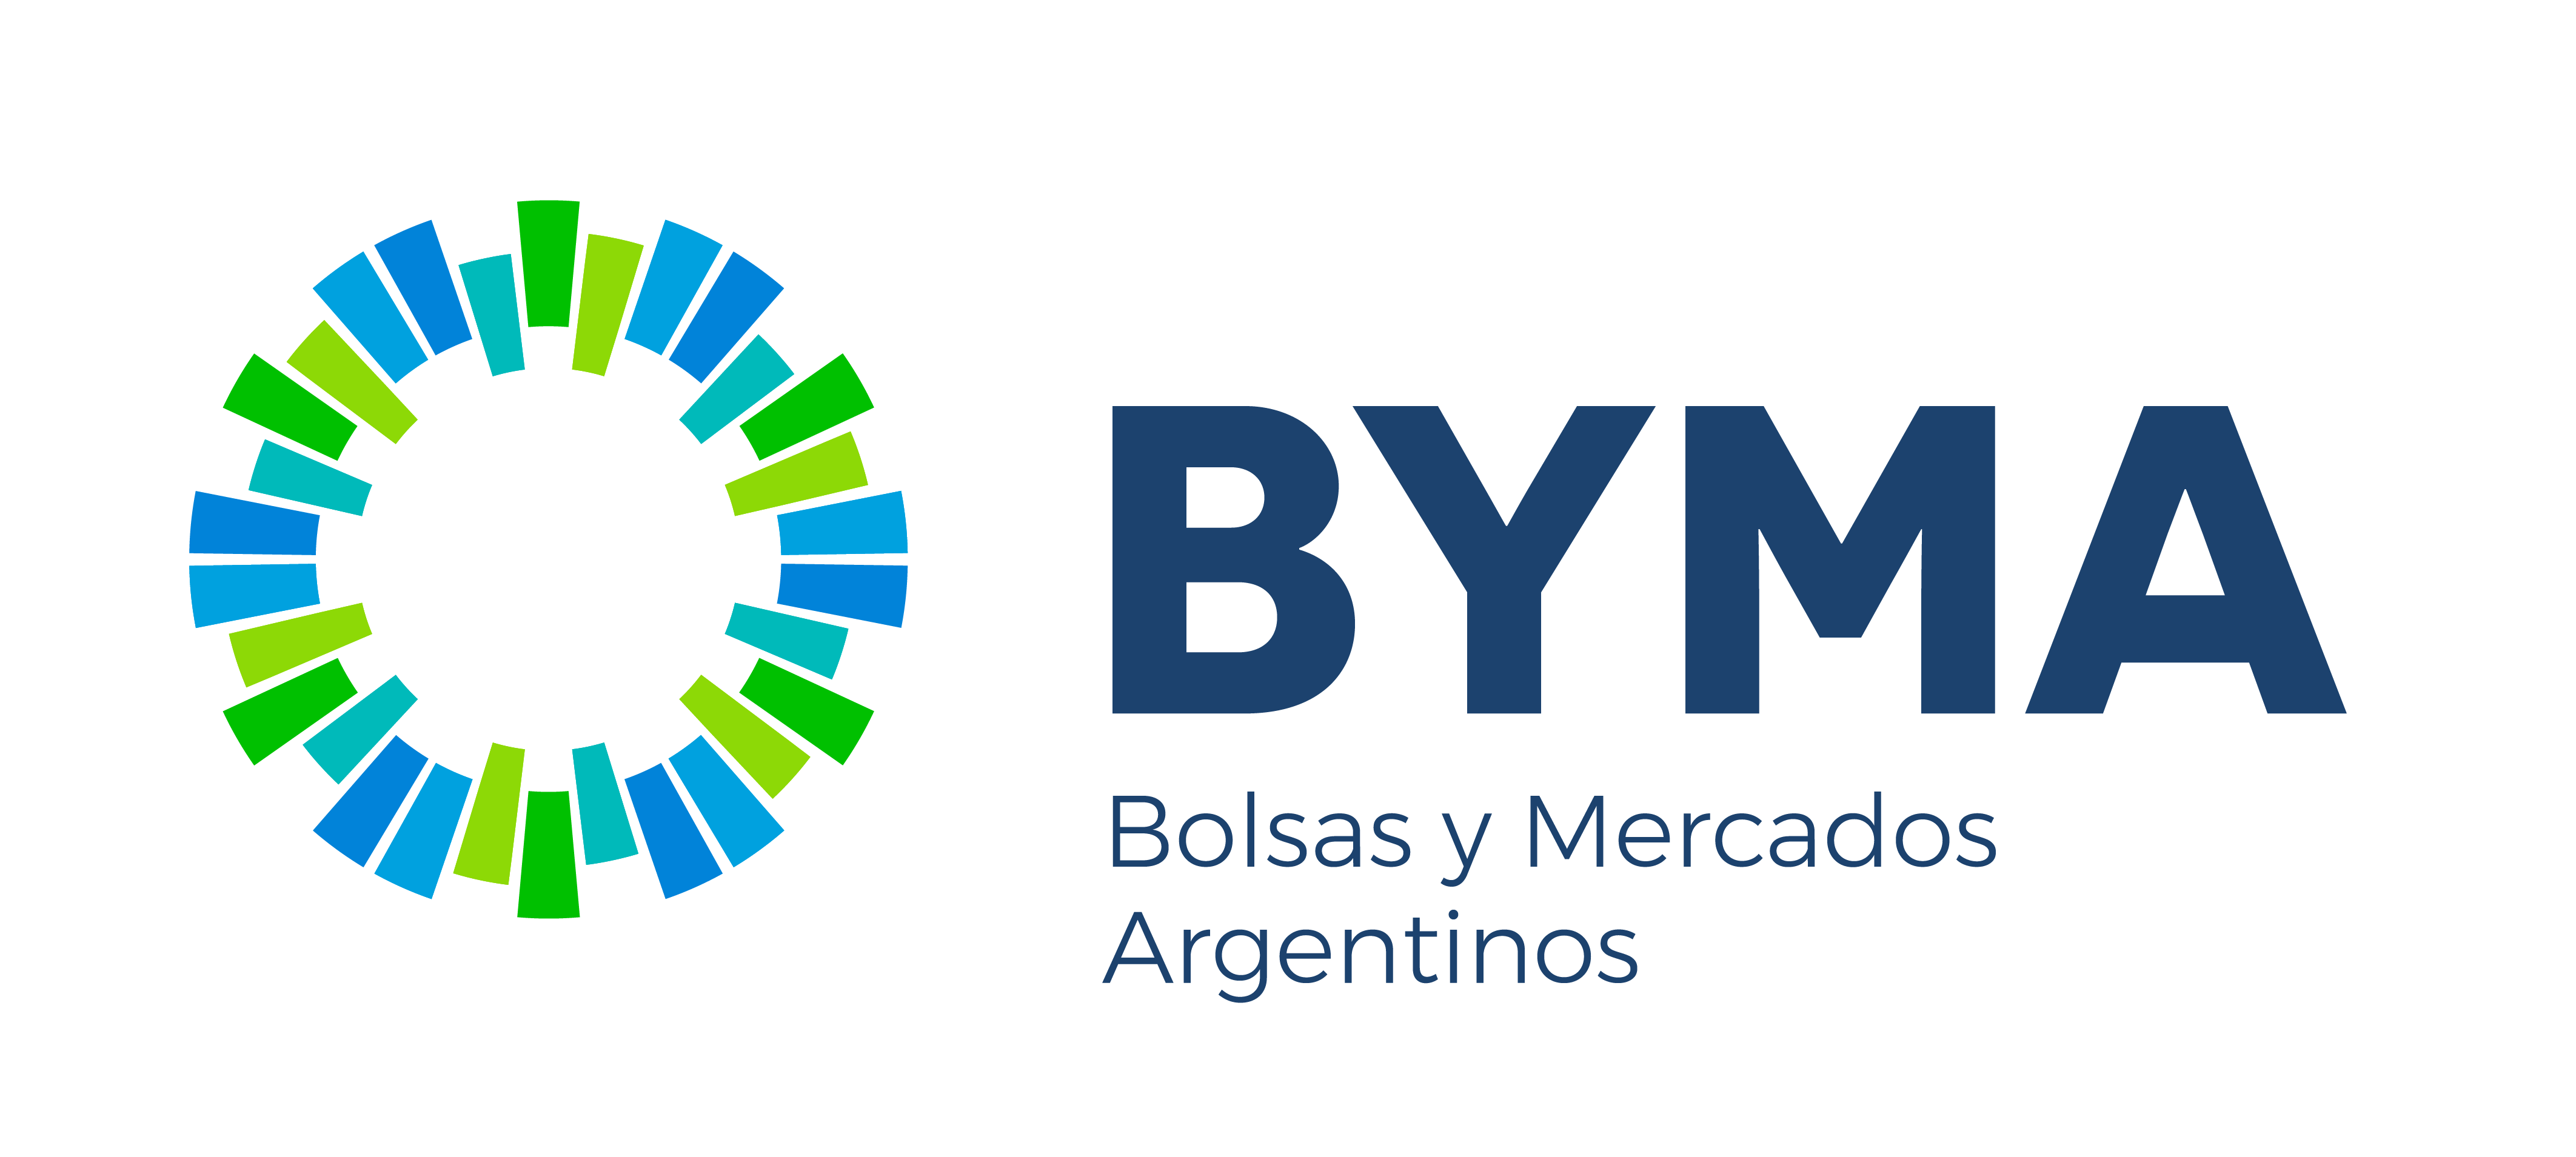 BYMA - Bolsas y Mercados Argentinos